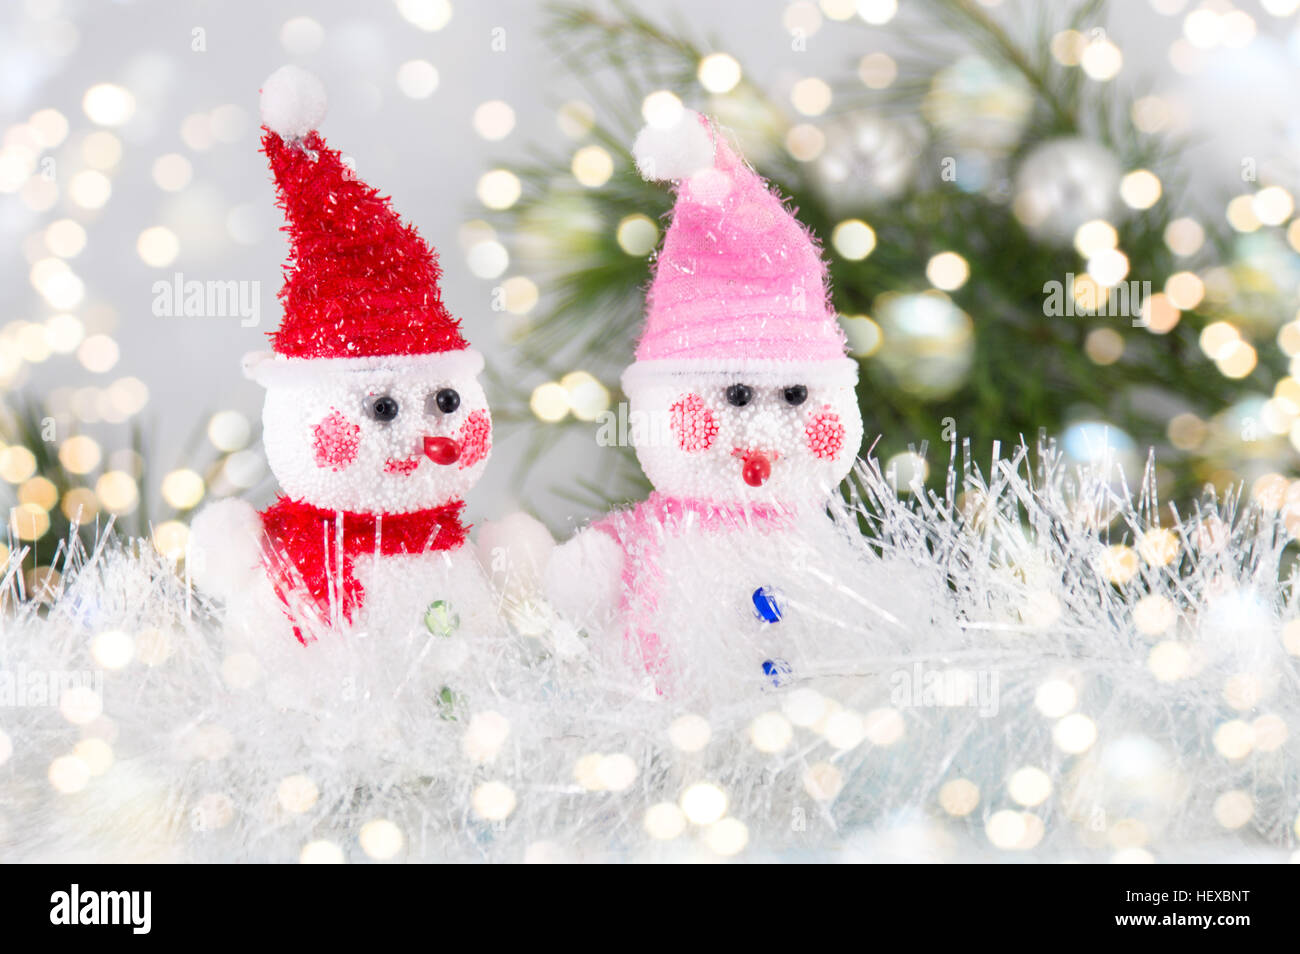 Deux toy snowman avec festive Christmas background Banque D'Images